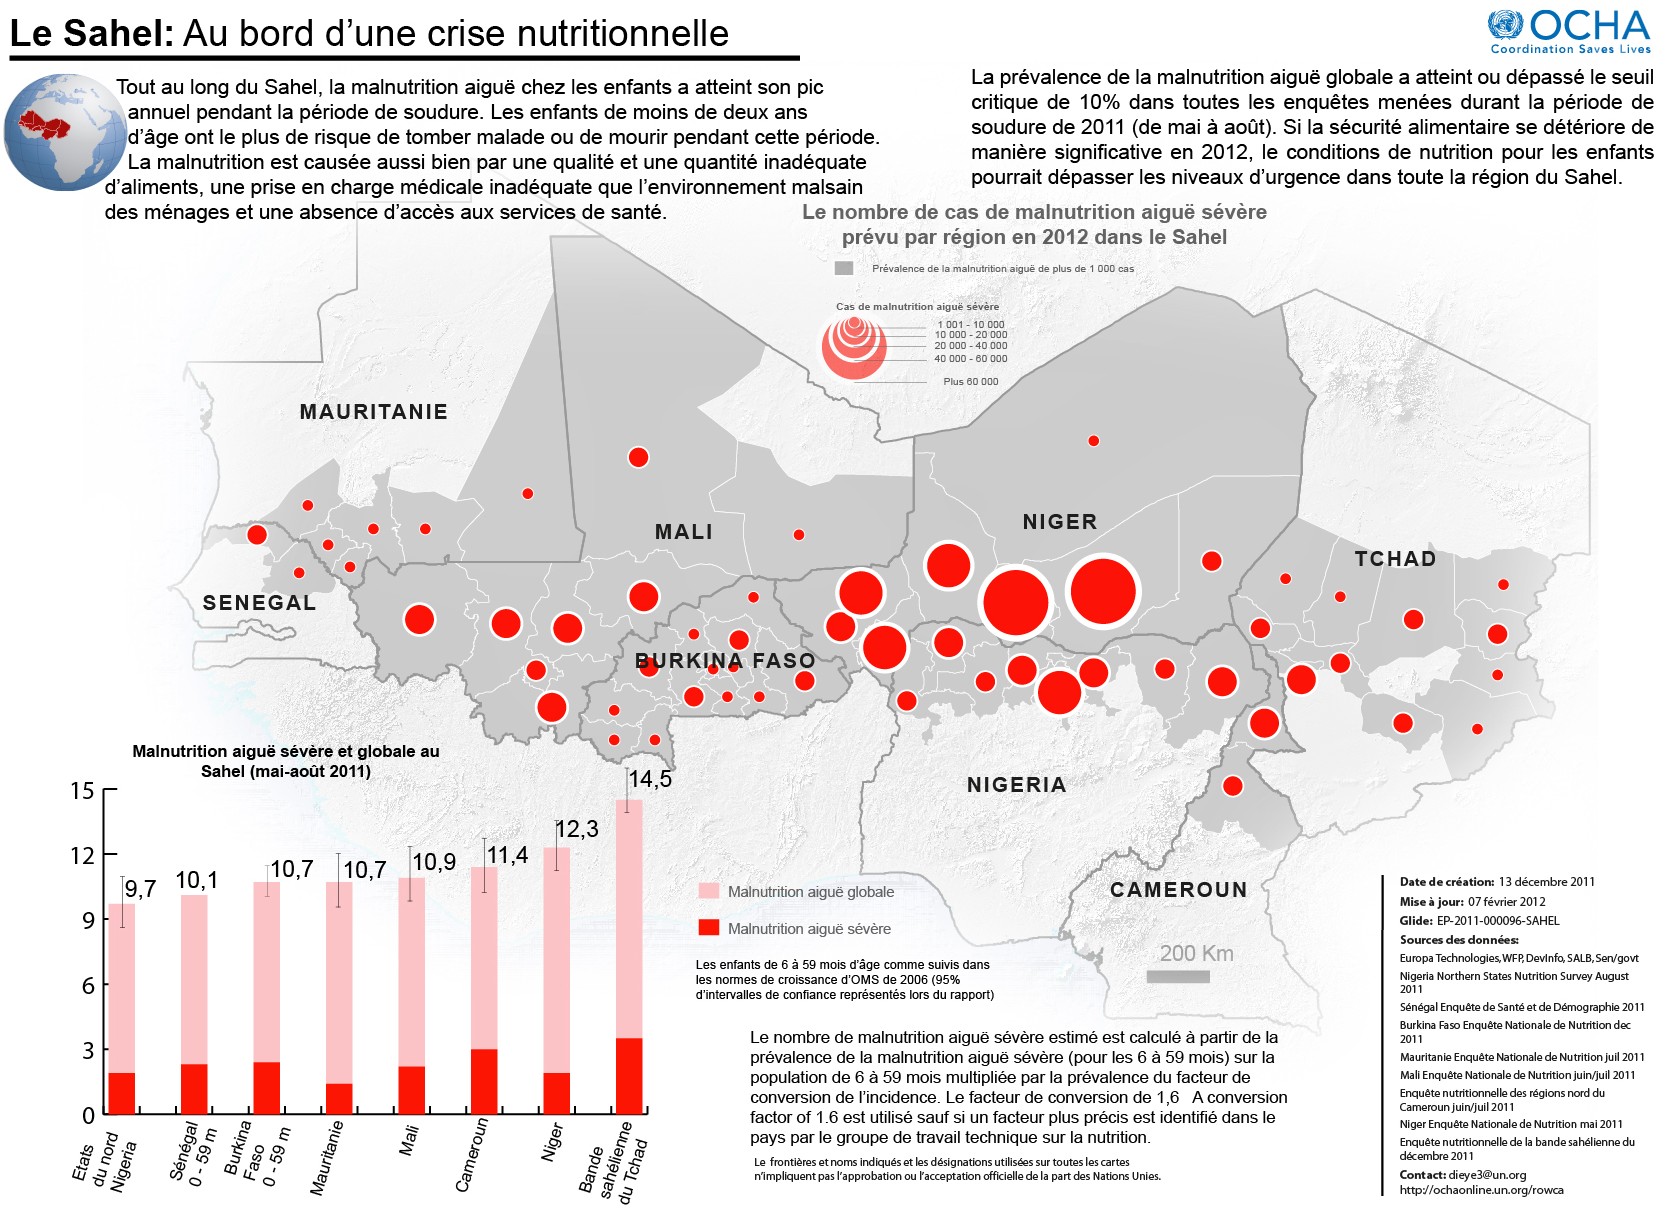 FOCUS SAHEL 2012 : SITUATION HUMANITAIRE Crise alimentaire et nutritionnelle au Sahel: les chiffres se précisent Après la publication le 15 décembre 2011 d un document de stratégie de «préparation